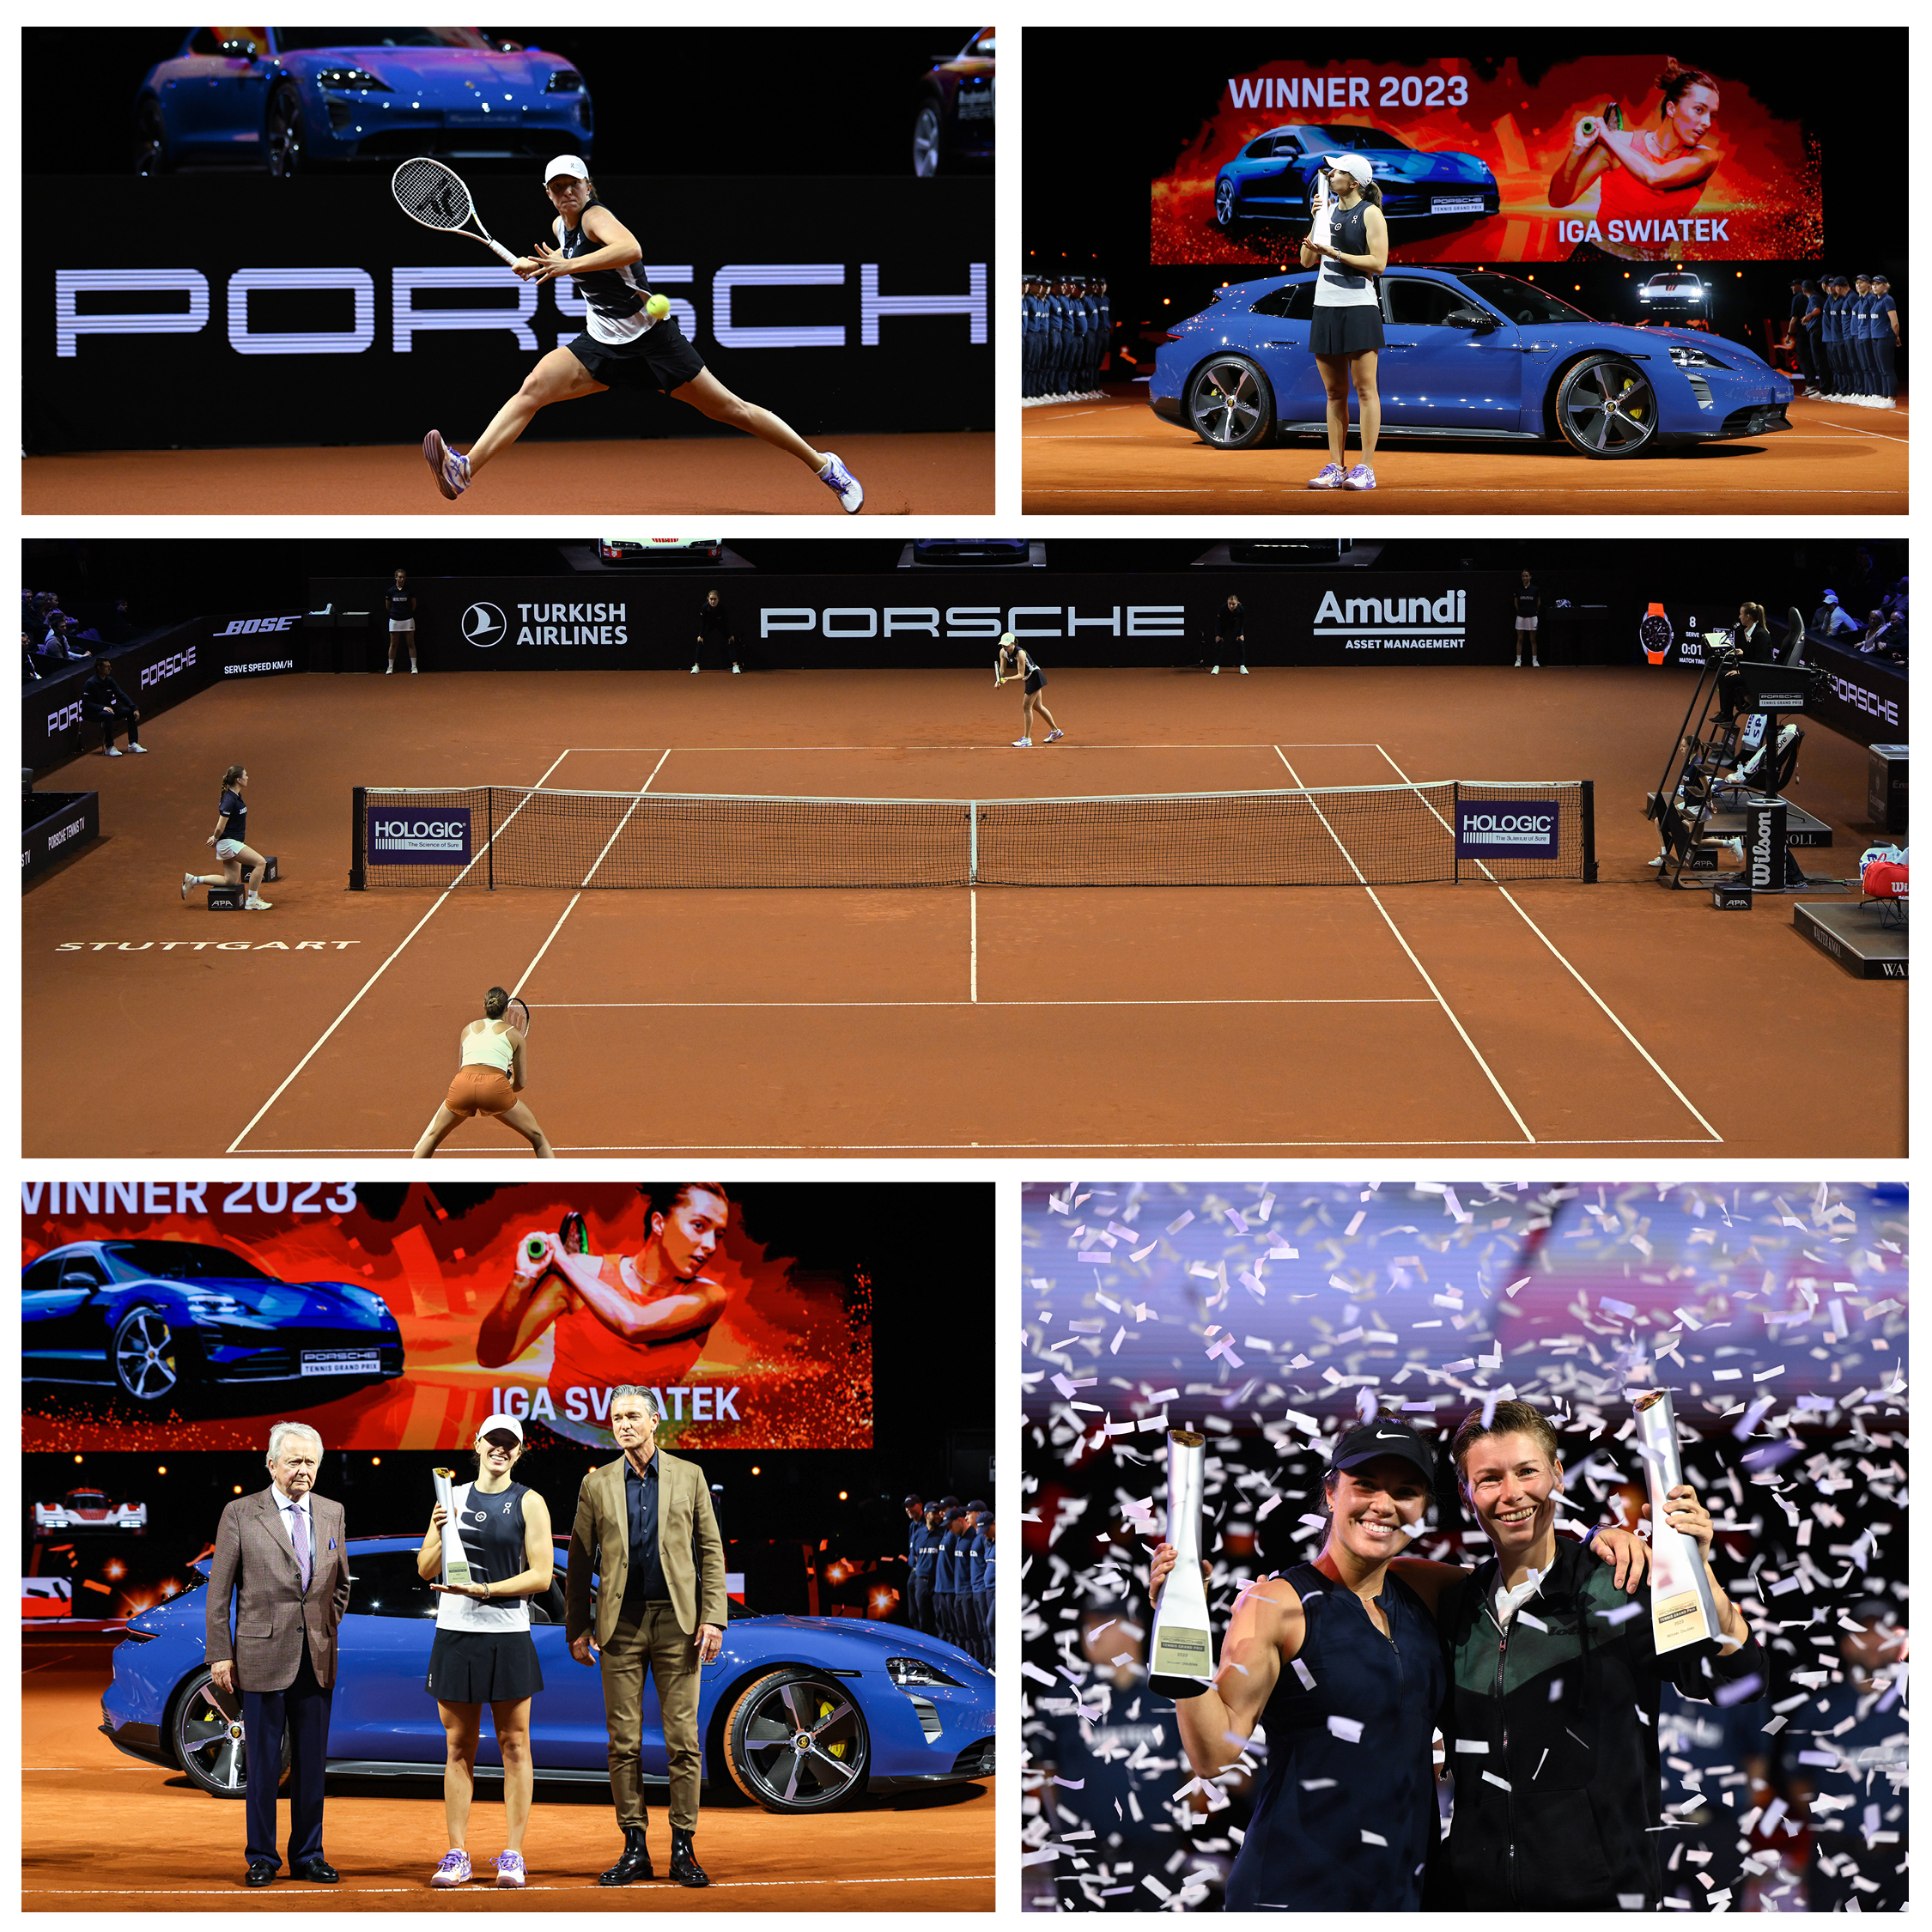 2 grands tournois – des joueuses de renom – le tennis à la #Porsche Arena de Stuttgart